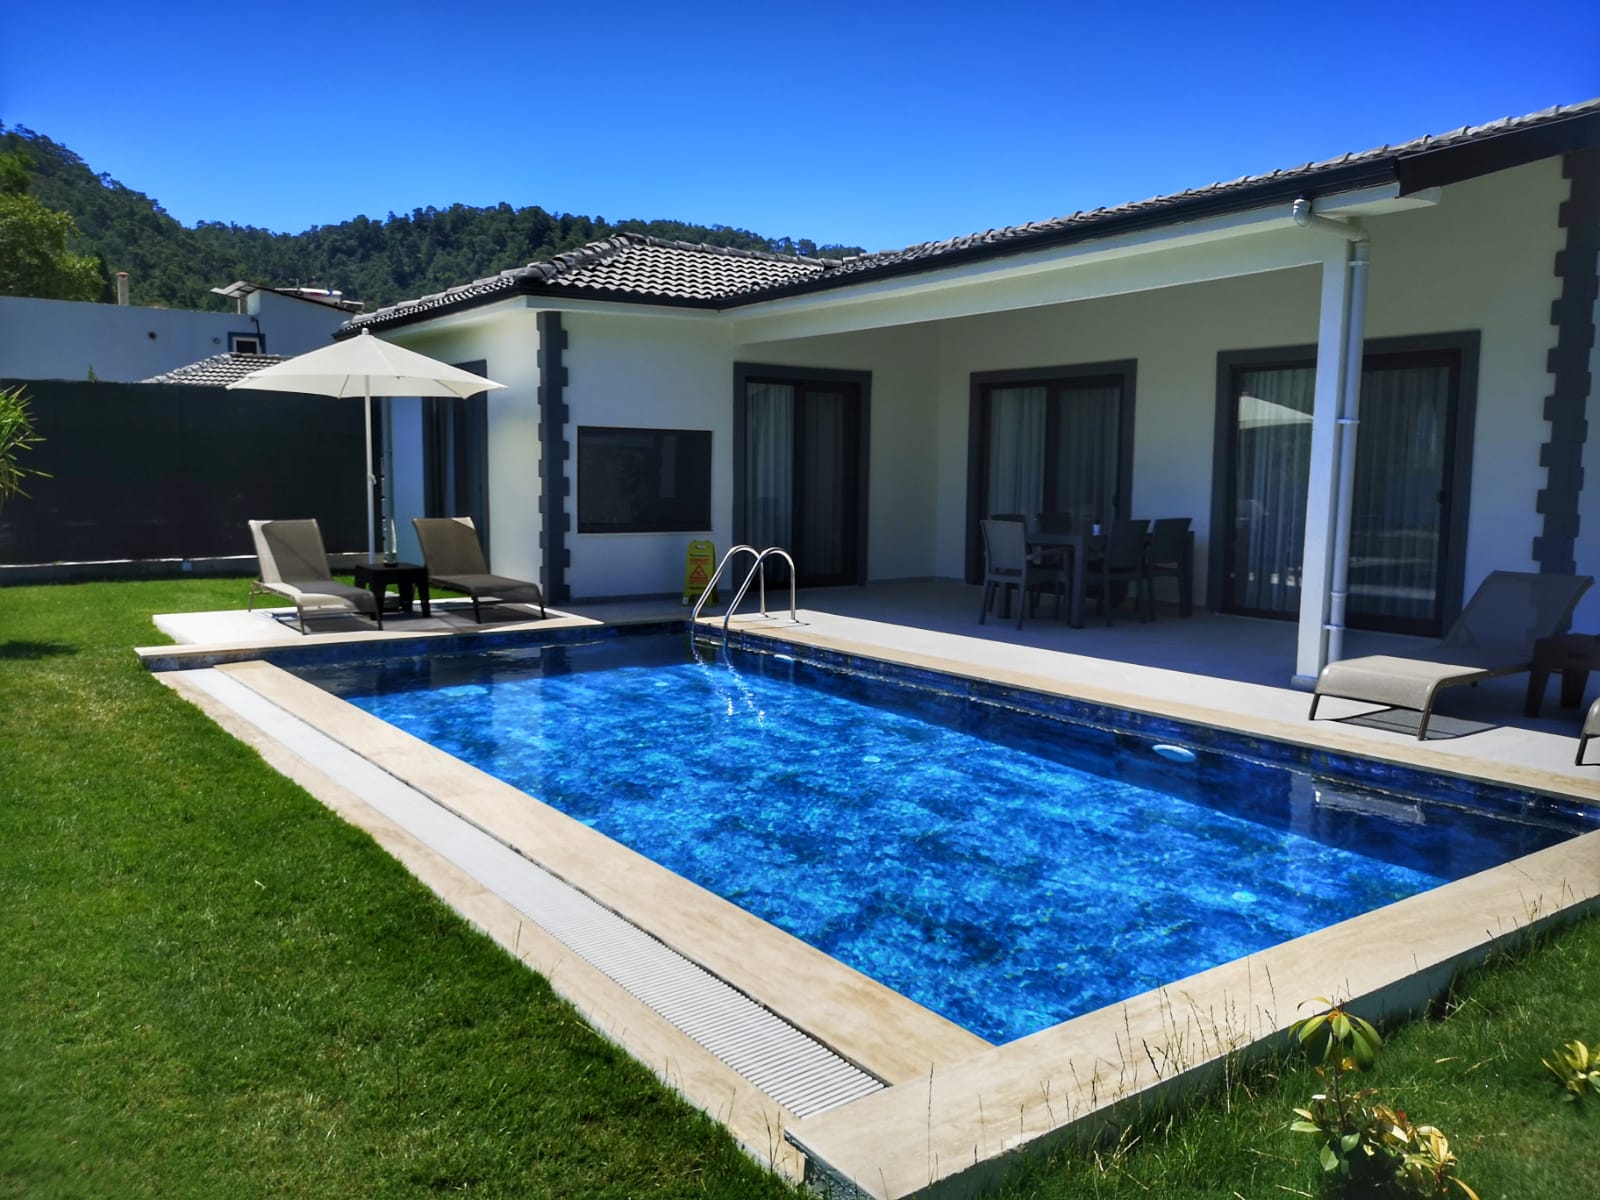 2 Bedroom Honeymoon Villa for Rent in Gocek Inlice